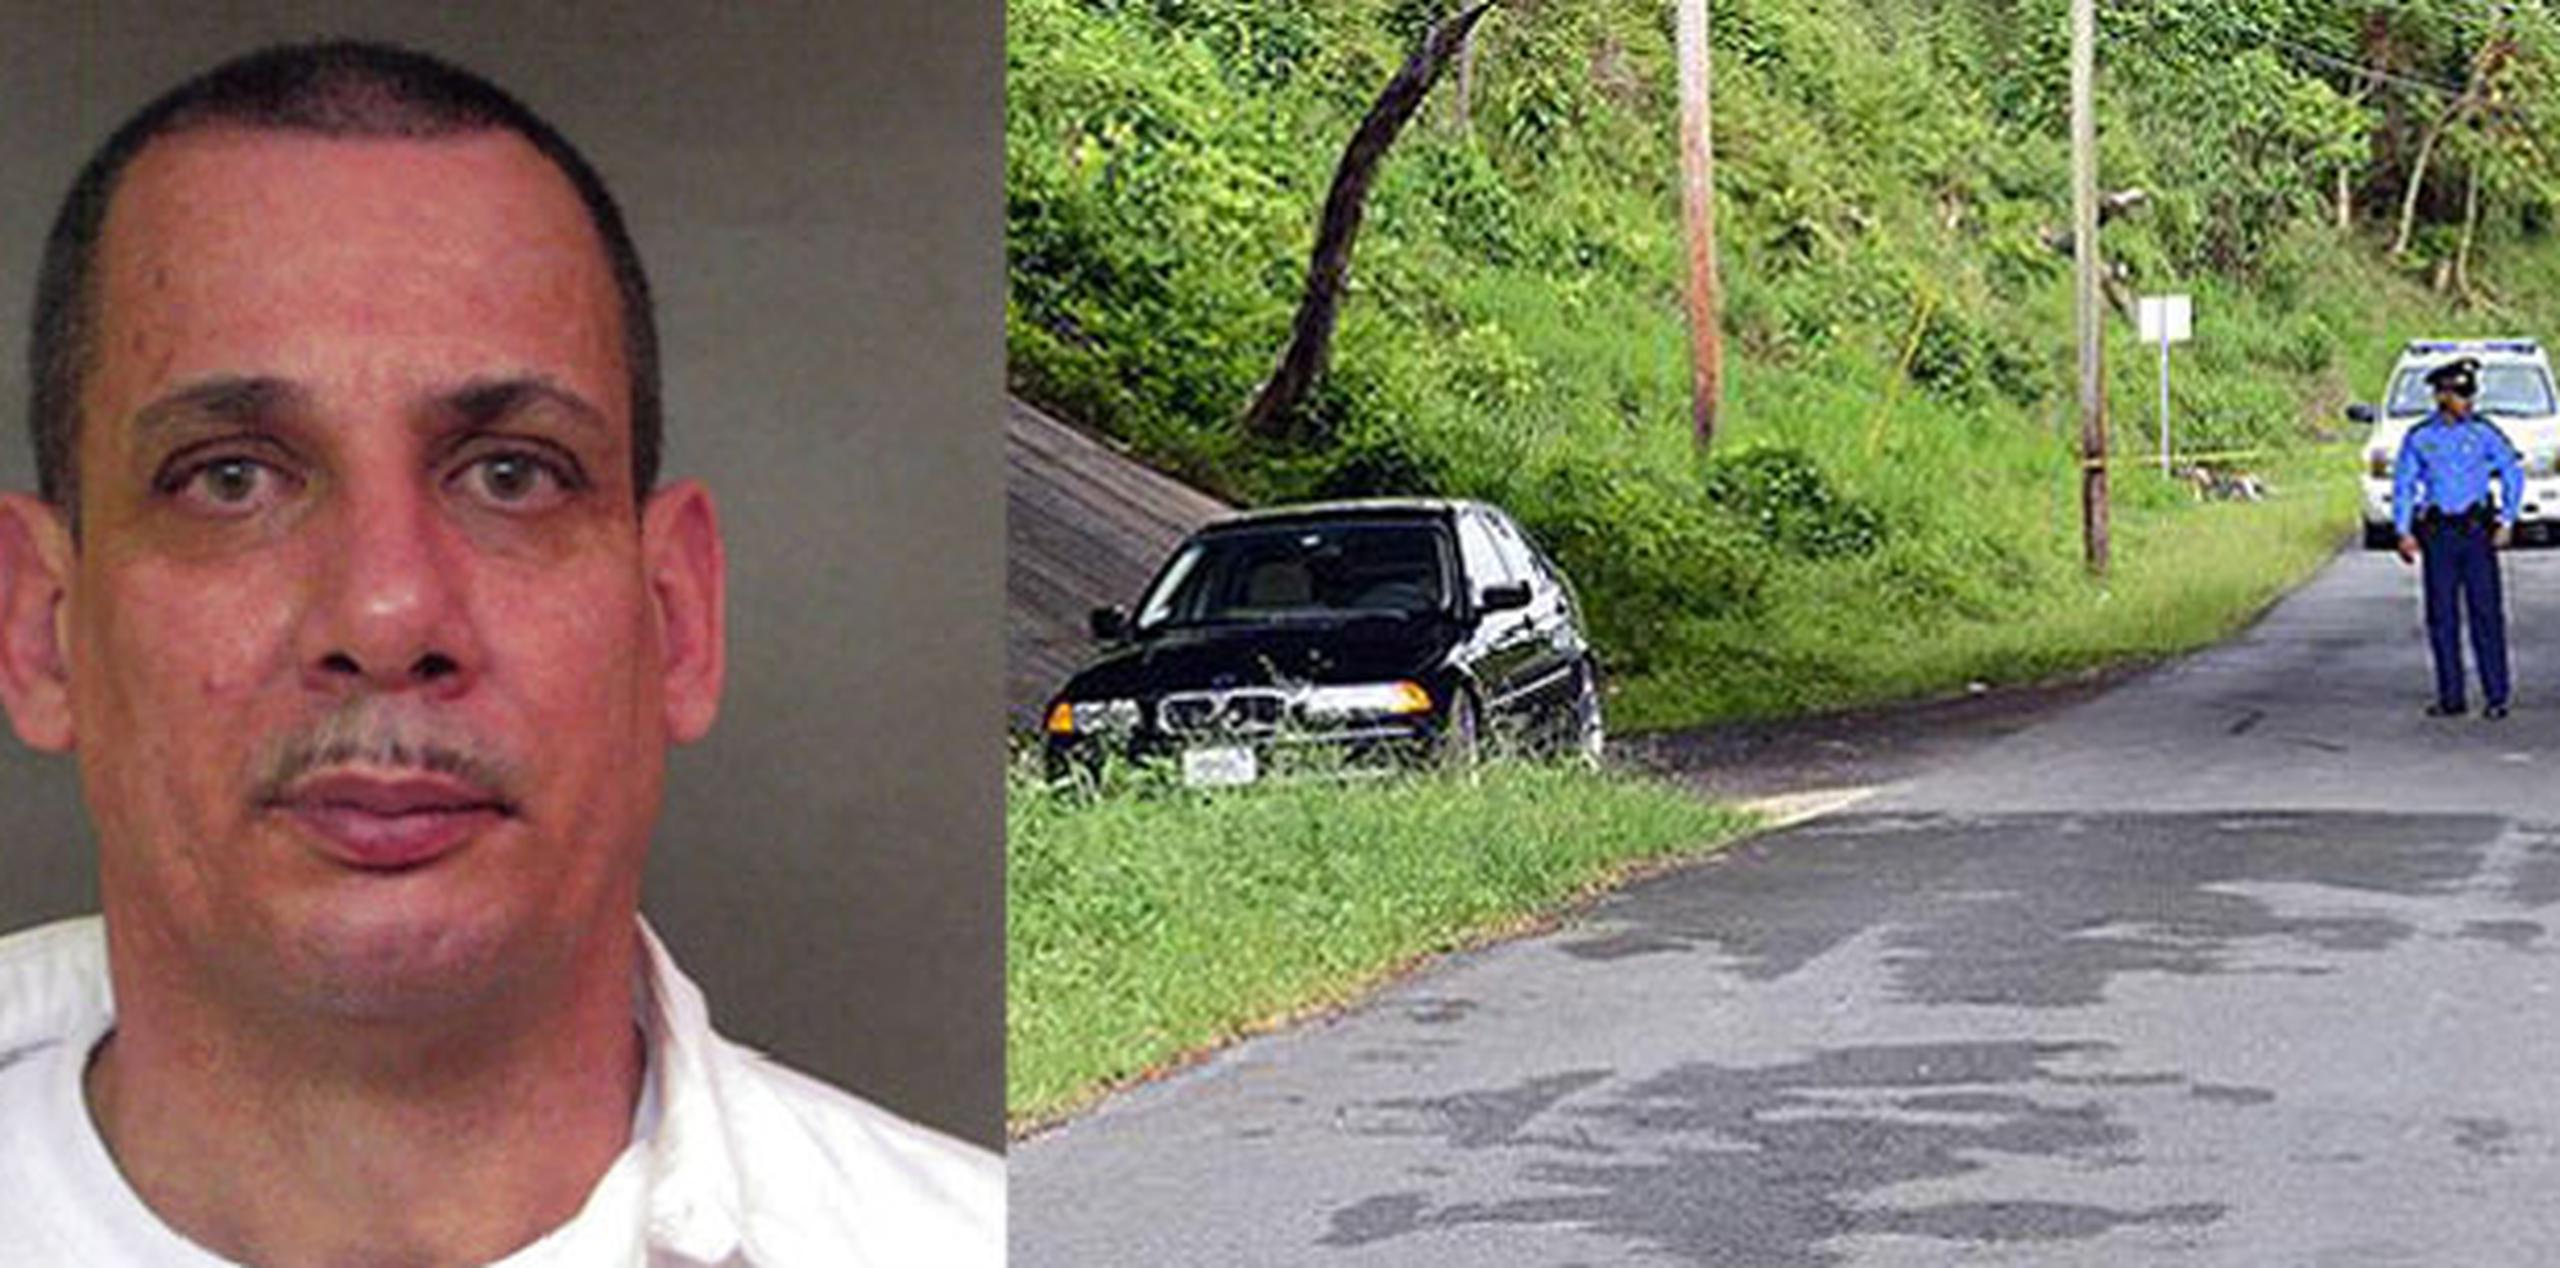 El vehículo del acusado Carlos M. Padilla Viera, un BMW negro serie 323, fue encontrado el pasado sábado, en el Camino Los Guayabos, sector Morcelo, debajo del puente de la autopista Luis A. Ferré, en Río Piedras. (Archivo)